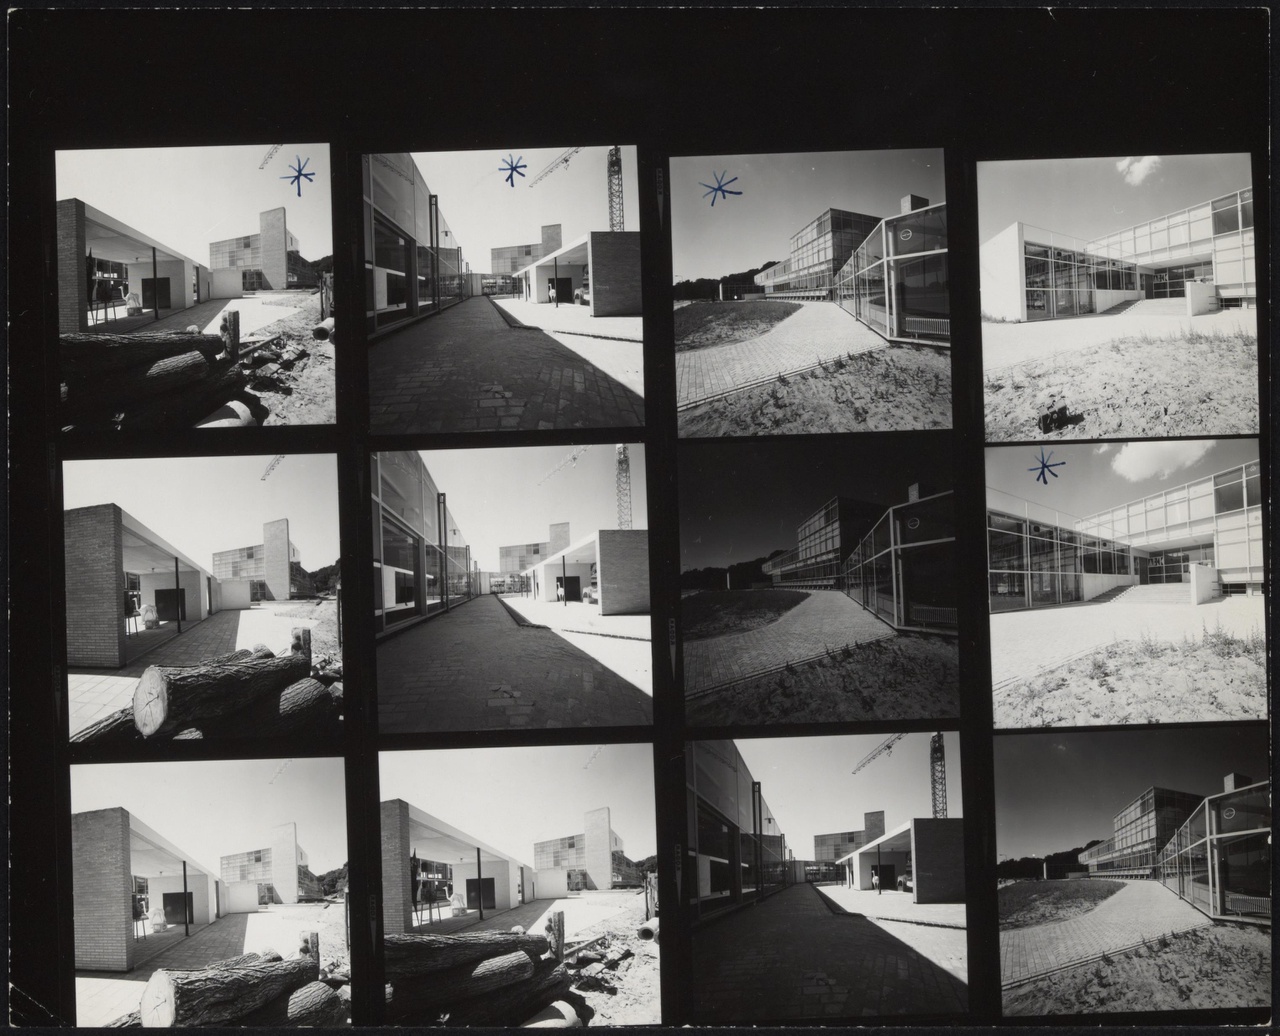 Afbeelding van Kunstacademie Arnhem, ca.1963, twaalf contact afdrukjes, van buiten achter, opzij en voor